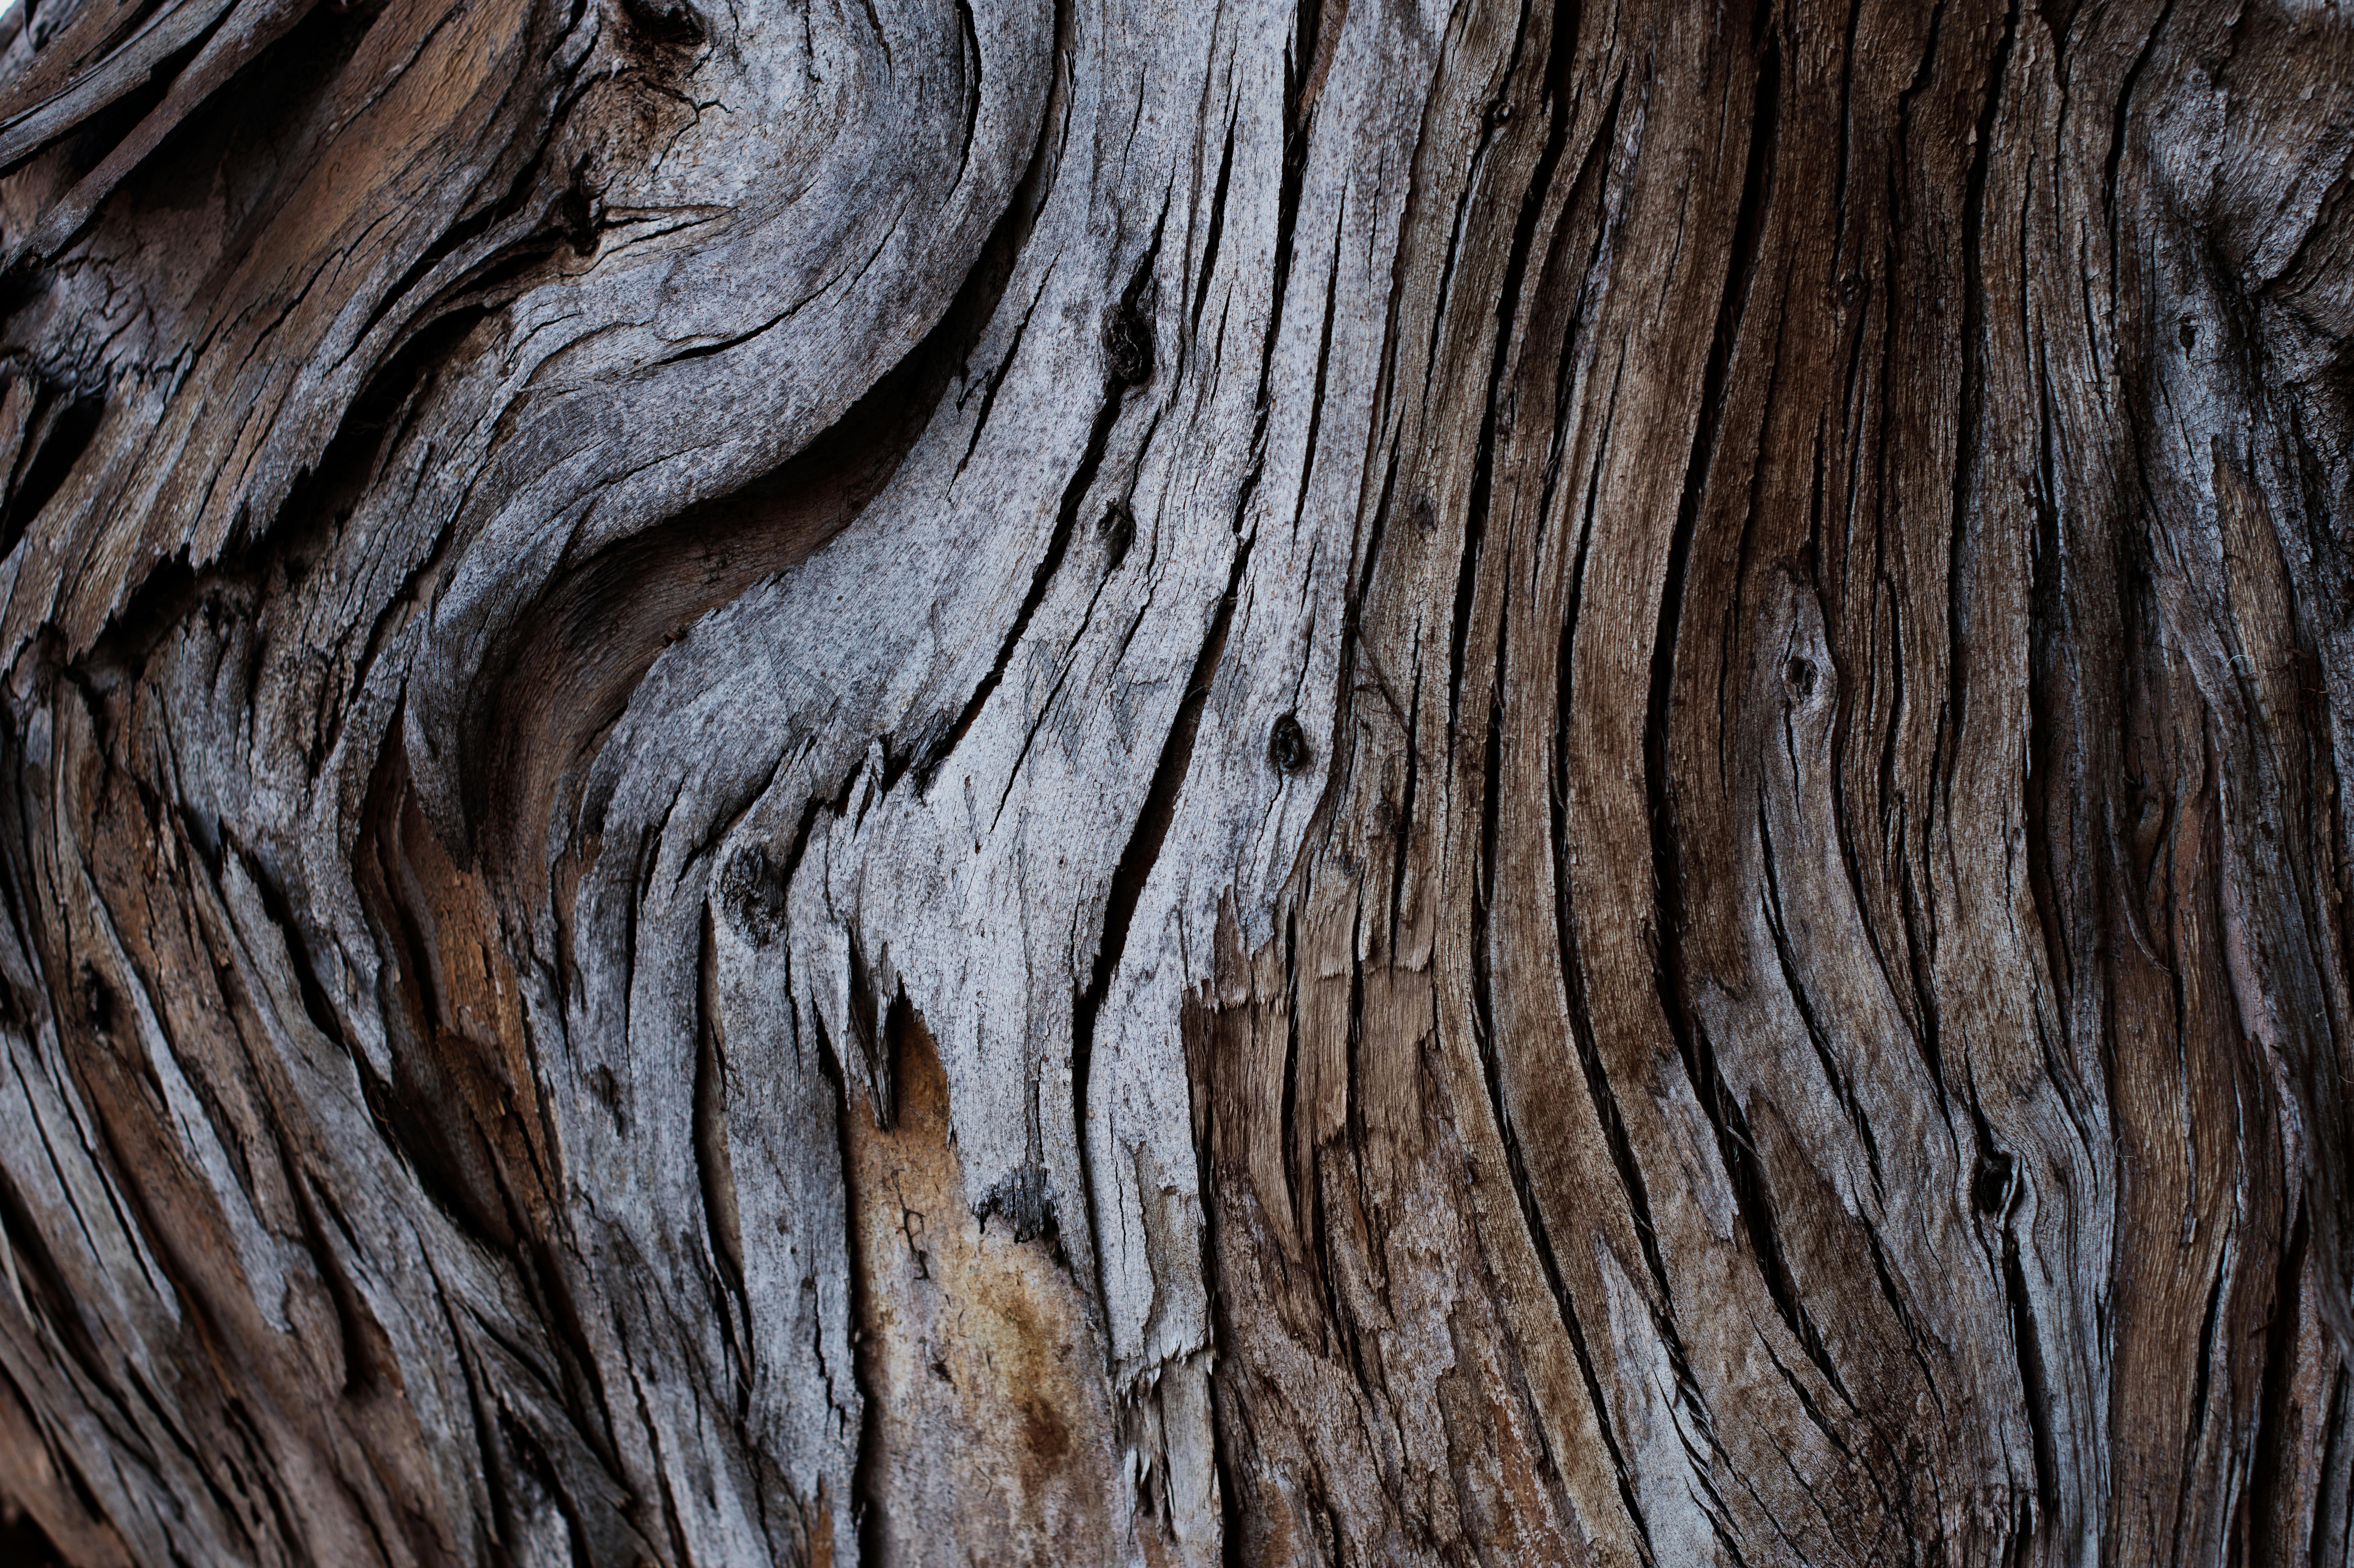 Khám phá vẻ đẹp độc đáo của vỏ cây bằng Tree Bark Photos. Vỏ cây có những họa tiết, kết cấu riêng biệt, cùng với những đường nét uốn lượn, tạo nên một thế giới kỳ thú đang chờ đón bạn khám phá. Bộ sưu tập ảnh rộng lớn về cây trồng, rừng xanh, khung cảnh thiên nhiên sẽ mang lại cho bạn nhiều bất ngờ thú vị.